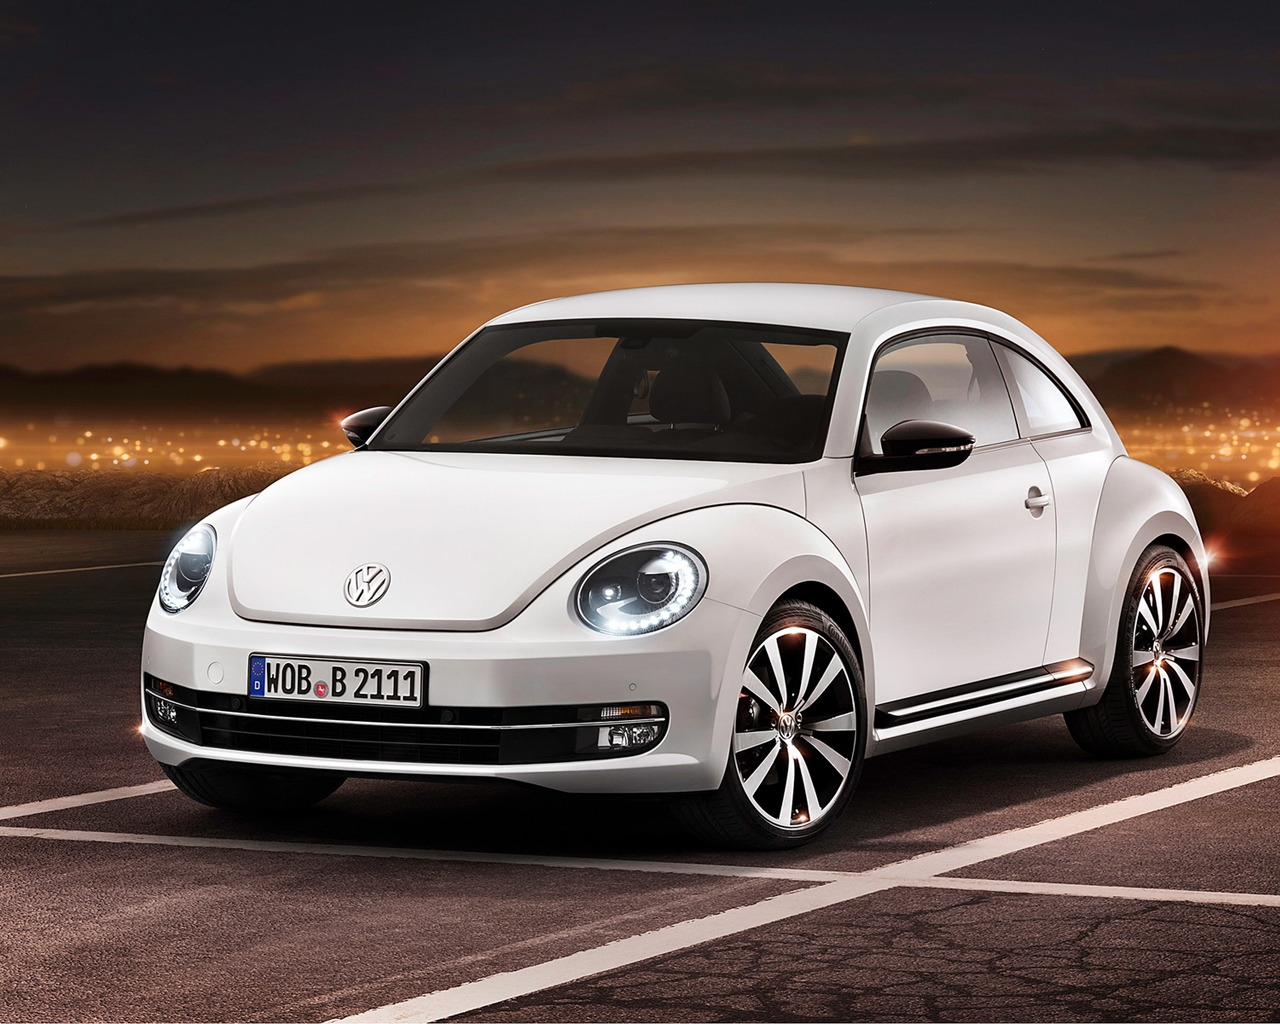 2012 Volkswagen Beetle for 1280 x 1024 resolution